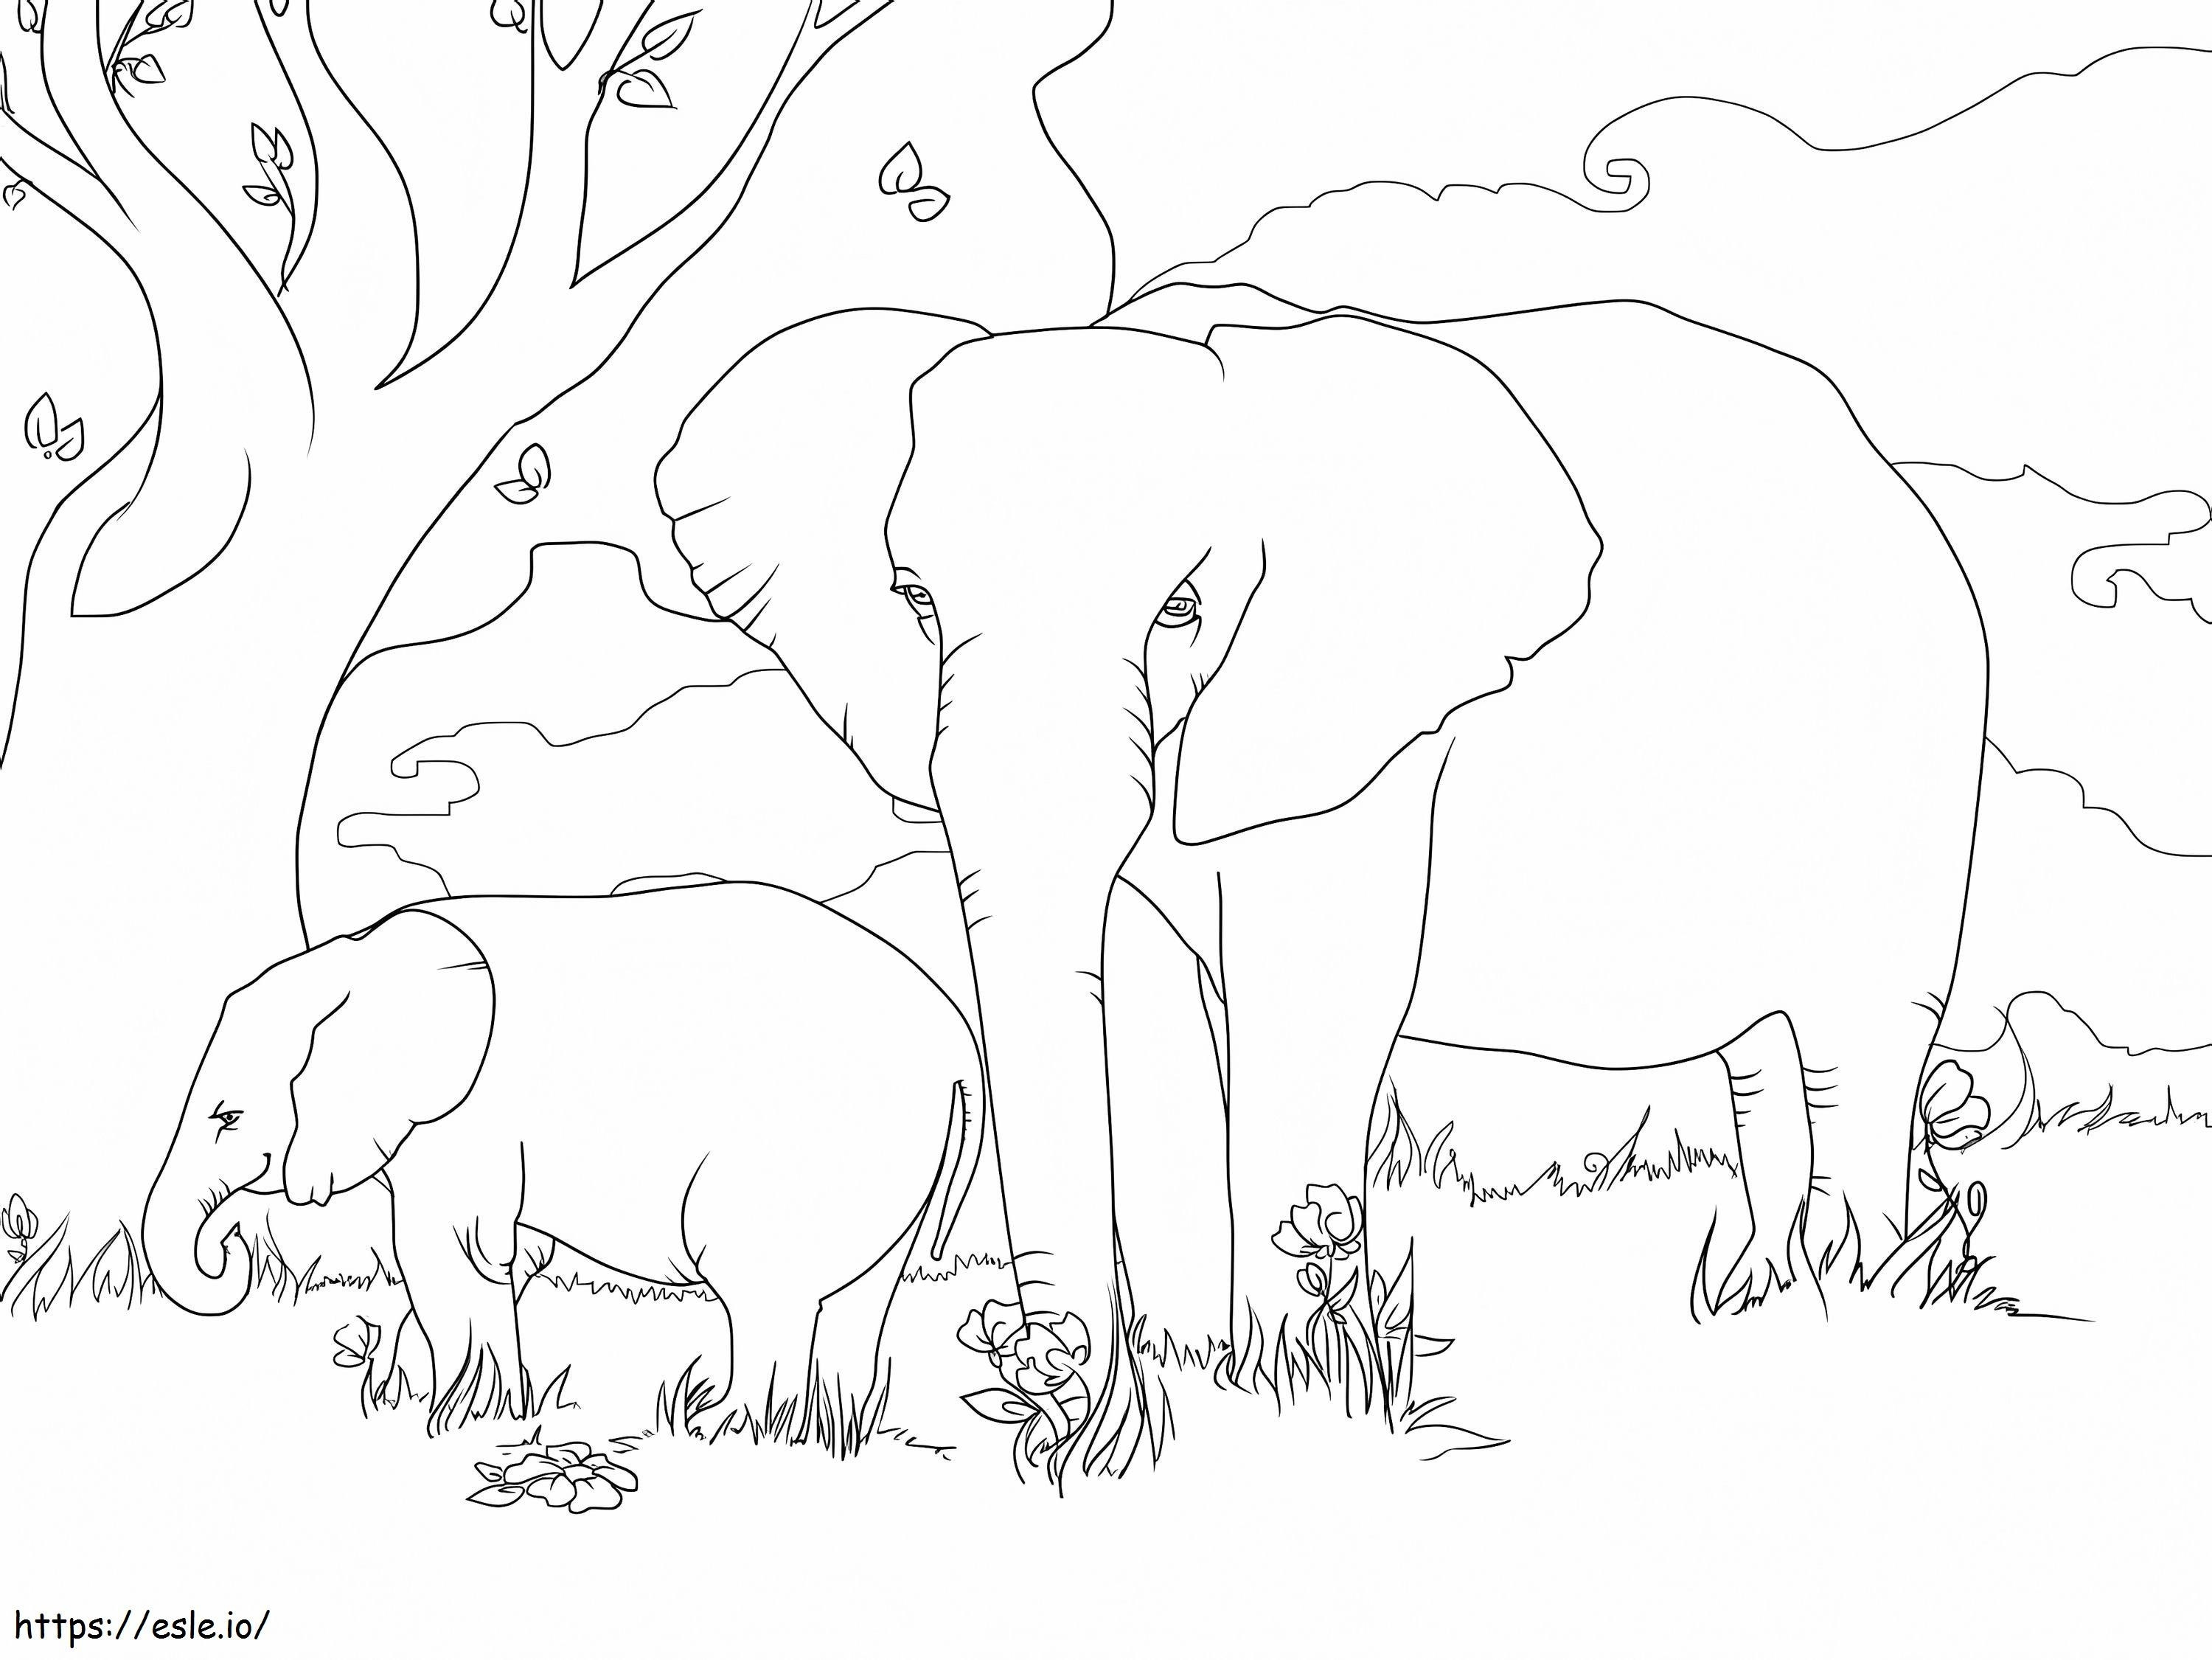 Gajah Semak Afrika Gambar Mewarnai